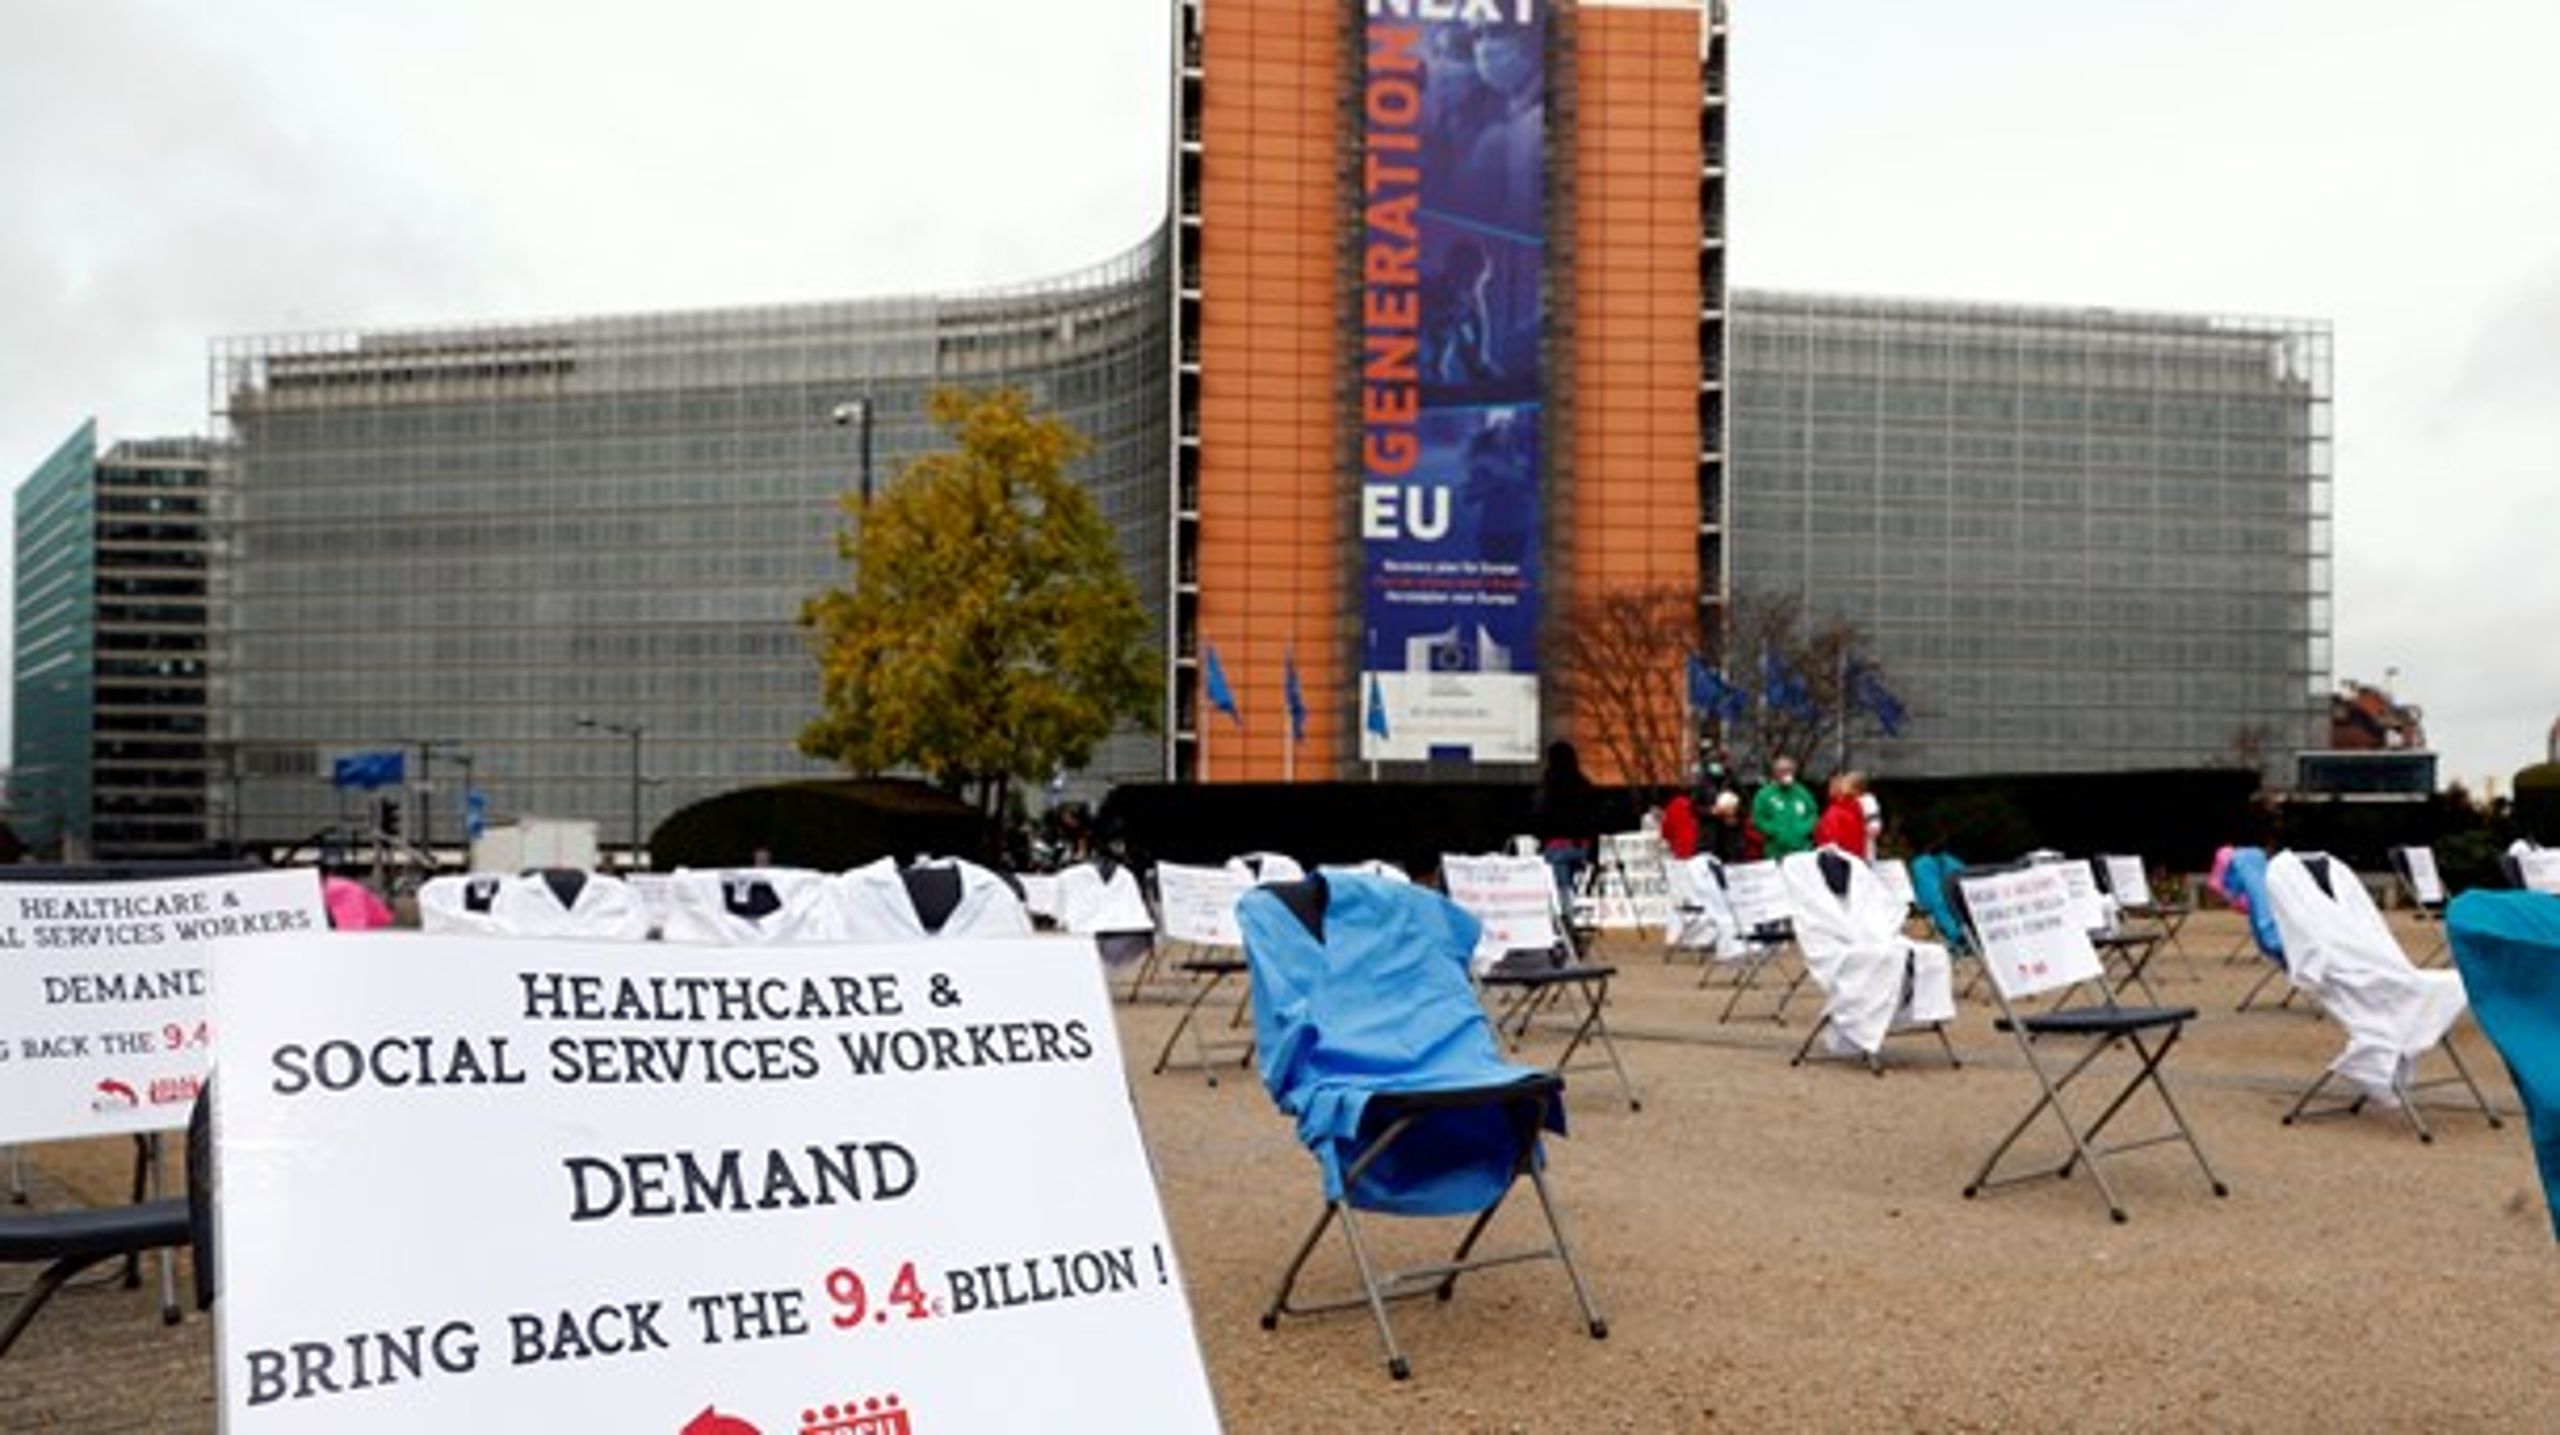 Der er blevet demonstreret i Bruxelles, efter regeringsledere i sommer beskar sundhedsdelen af EU's budget.